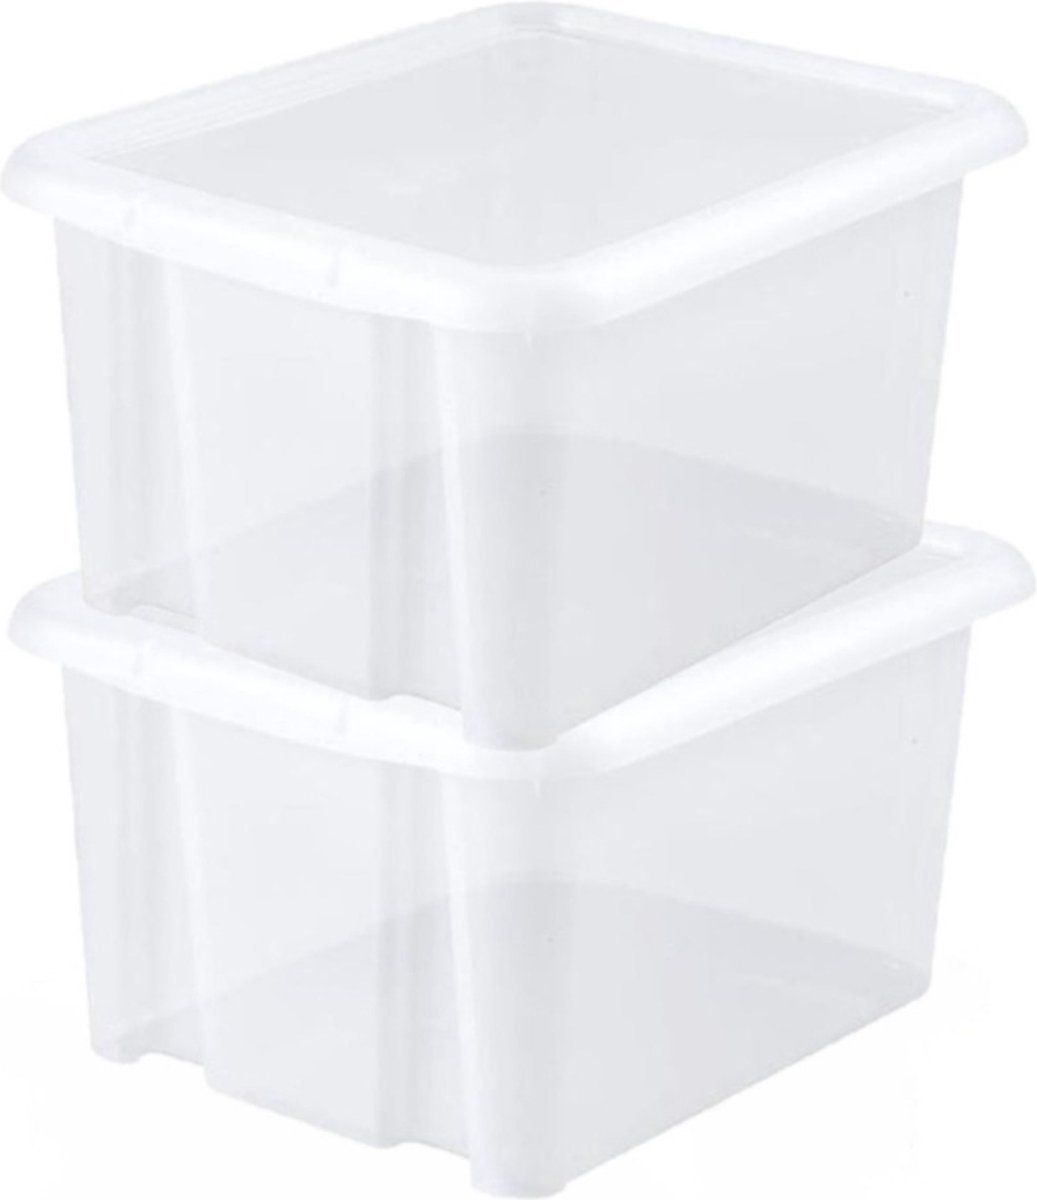 8x stuks kunststof opbergboxen/opbergdozen wit transparant L44 x B36 x H25 cm stapelbaar - Voorraad/opberg boxen/bakken met deksel